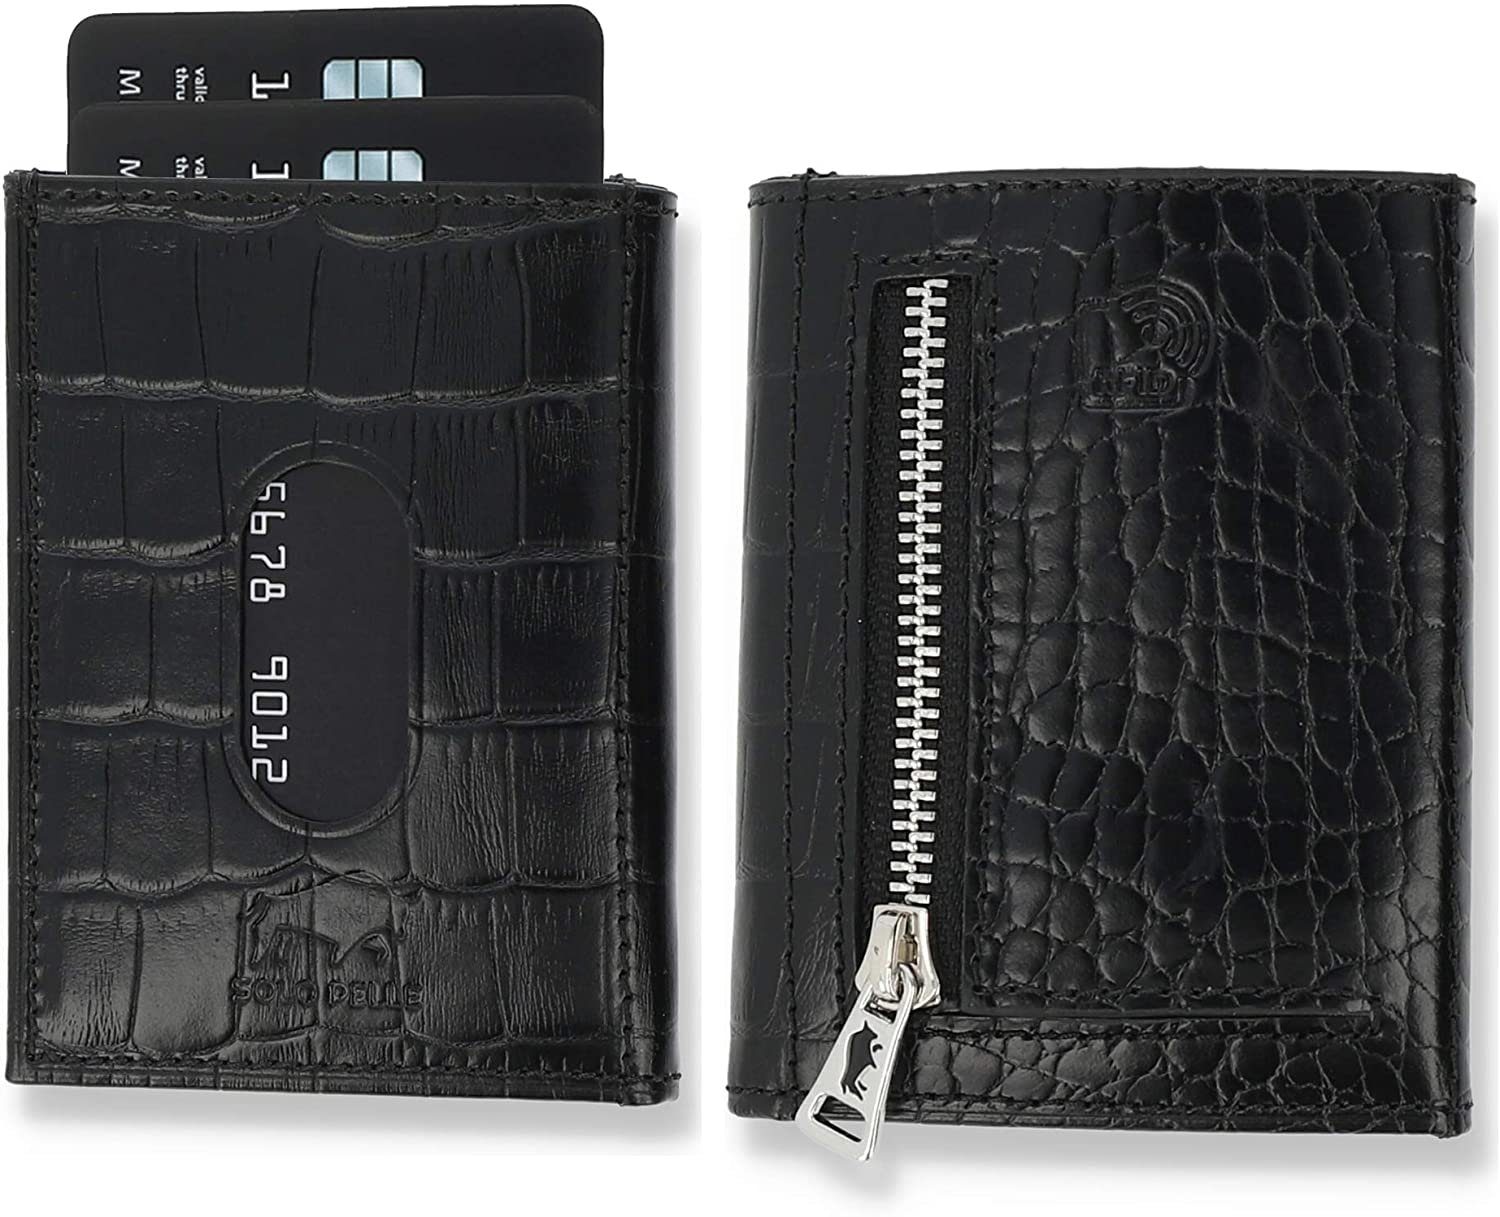 Solo Pelle Brieftasche Slim Wallet mit Münzfach [12 Karten] Slimwallet Riga [RFID-Schutz], echt Leder, RFID Schutz, Macde in Europe Krokoprägung